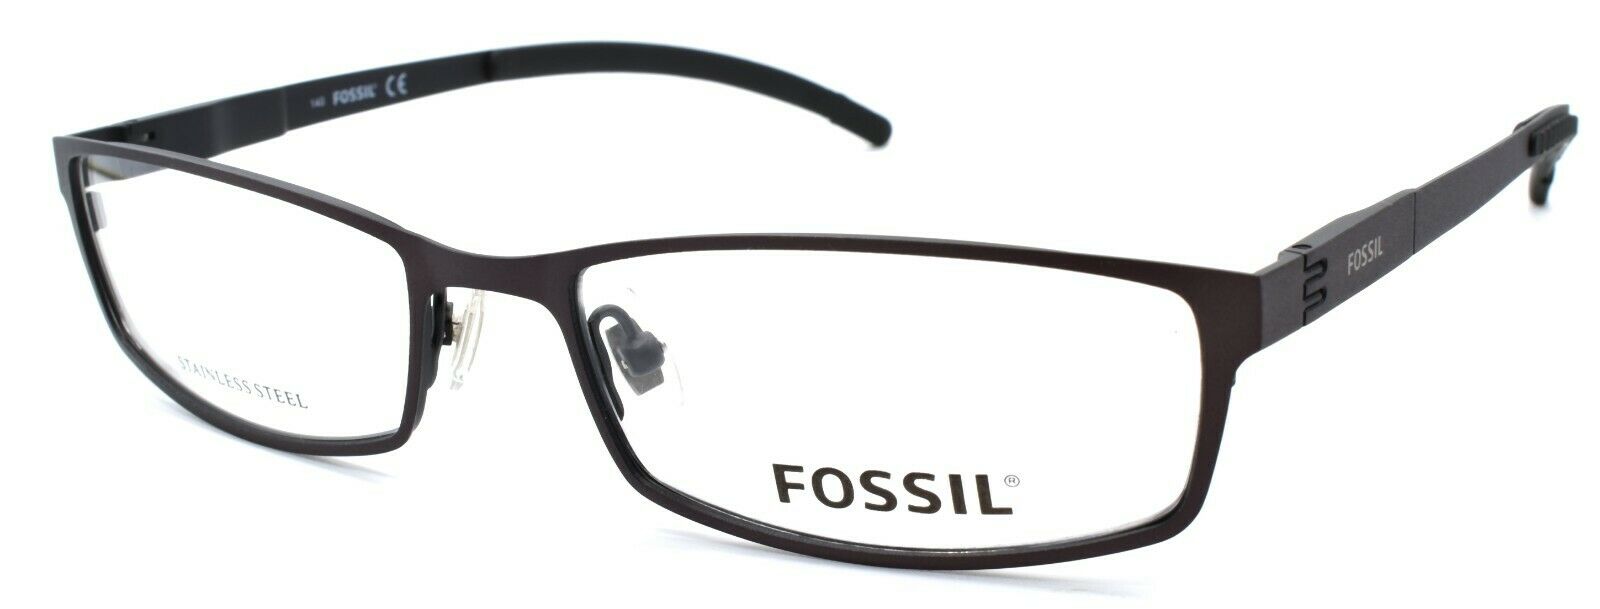 1-Fossil Felix 0JYL Men's Eyeglasses Frames 54-17-140 Ruthenium / Black-716737134023-IKSpecs